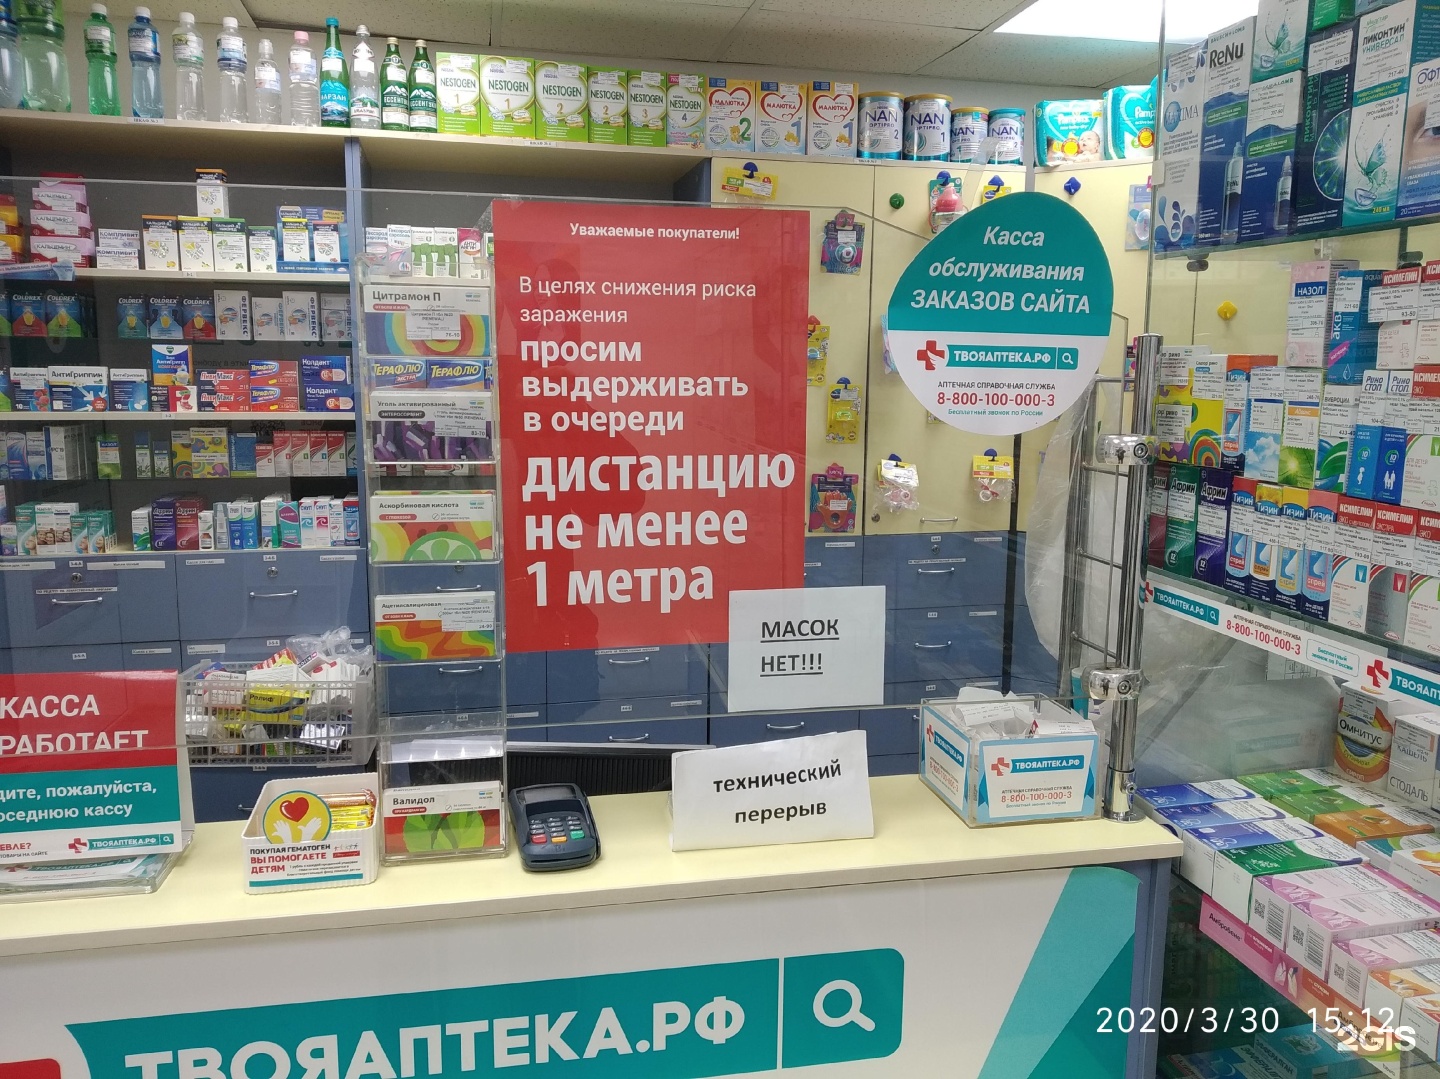 Телефон аптеки южно сахалинск. Твоя аптека Комсомольск-на-Амуре. Склад аптеки. Новая аптека Хабаровск. Твоя аптека Хабаровск заказать.